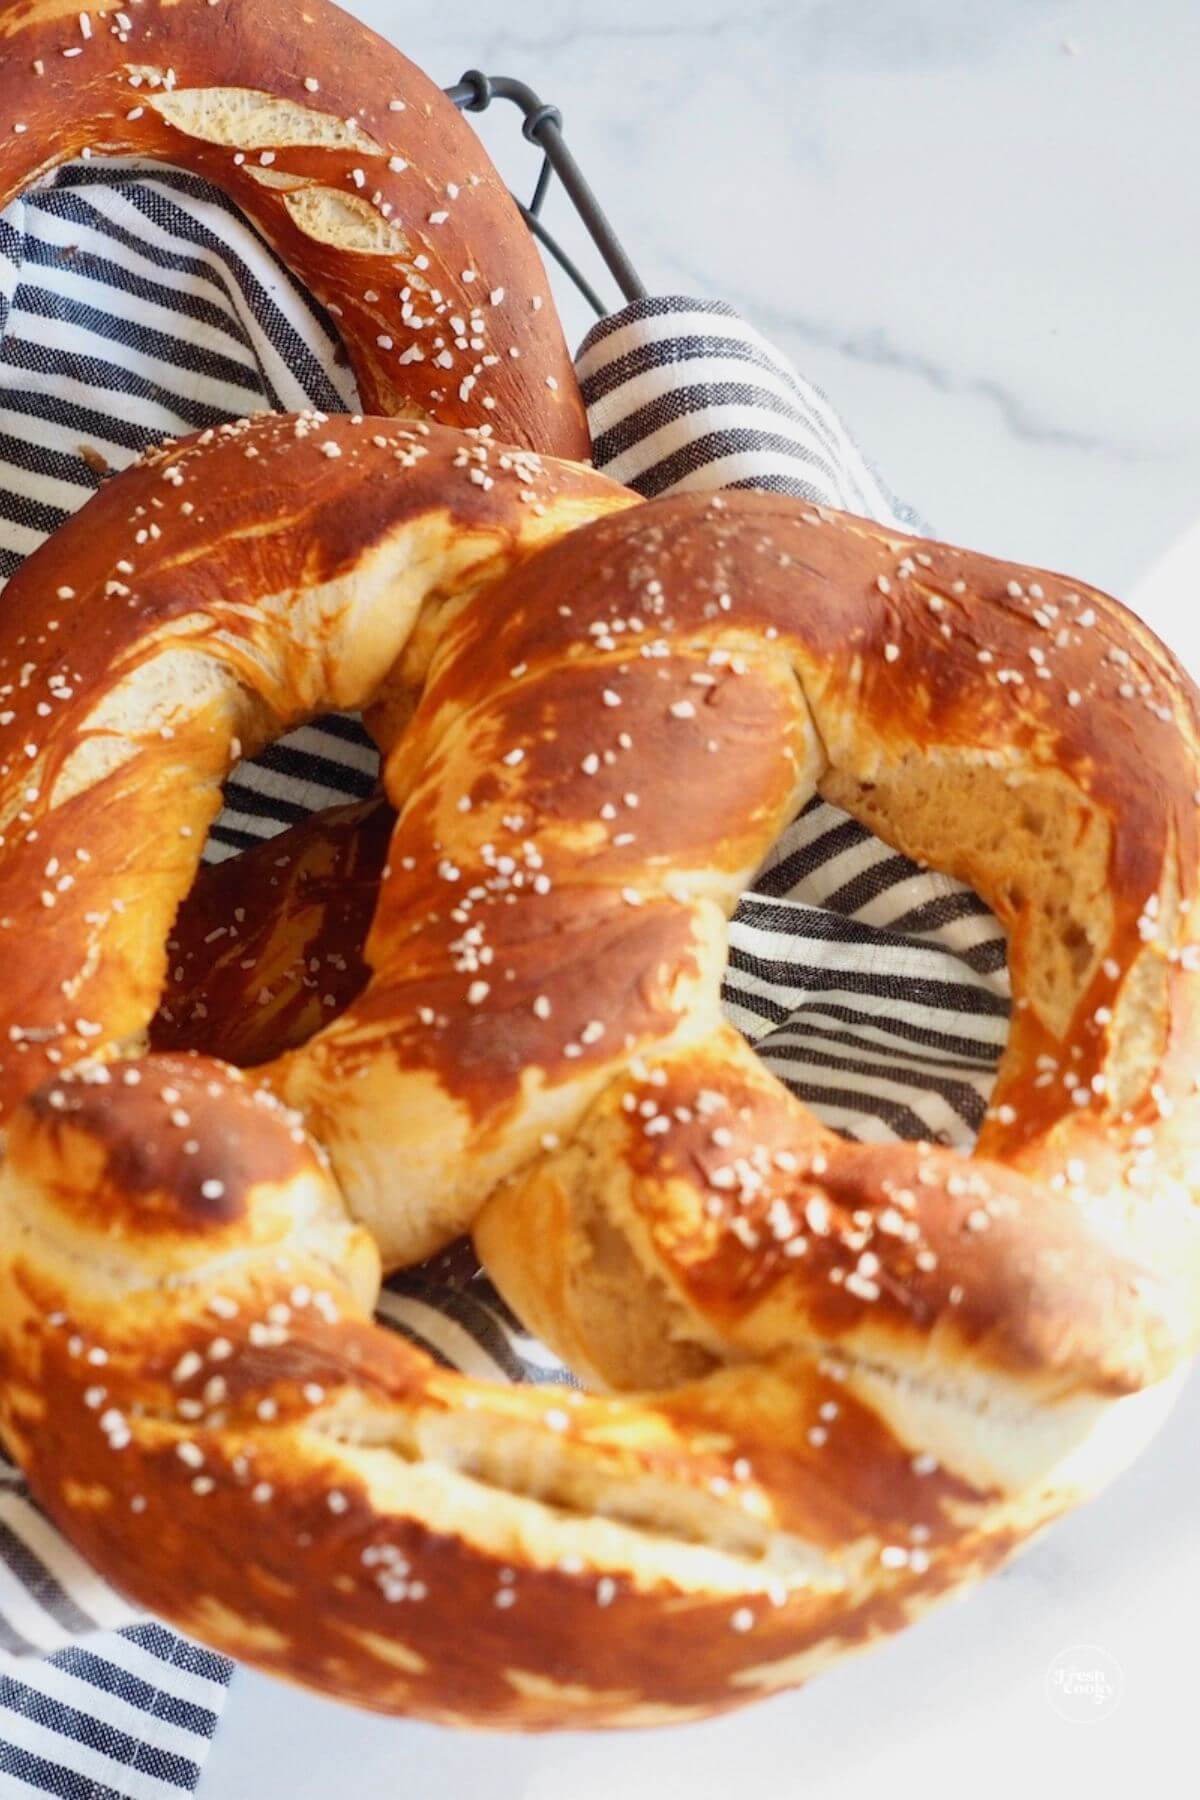 Bavarian pretzels ready to serve.